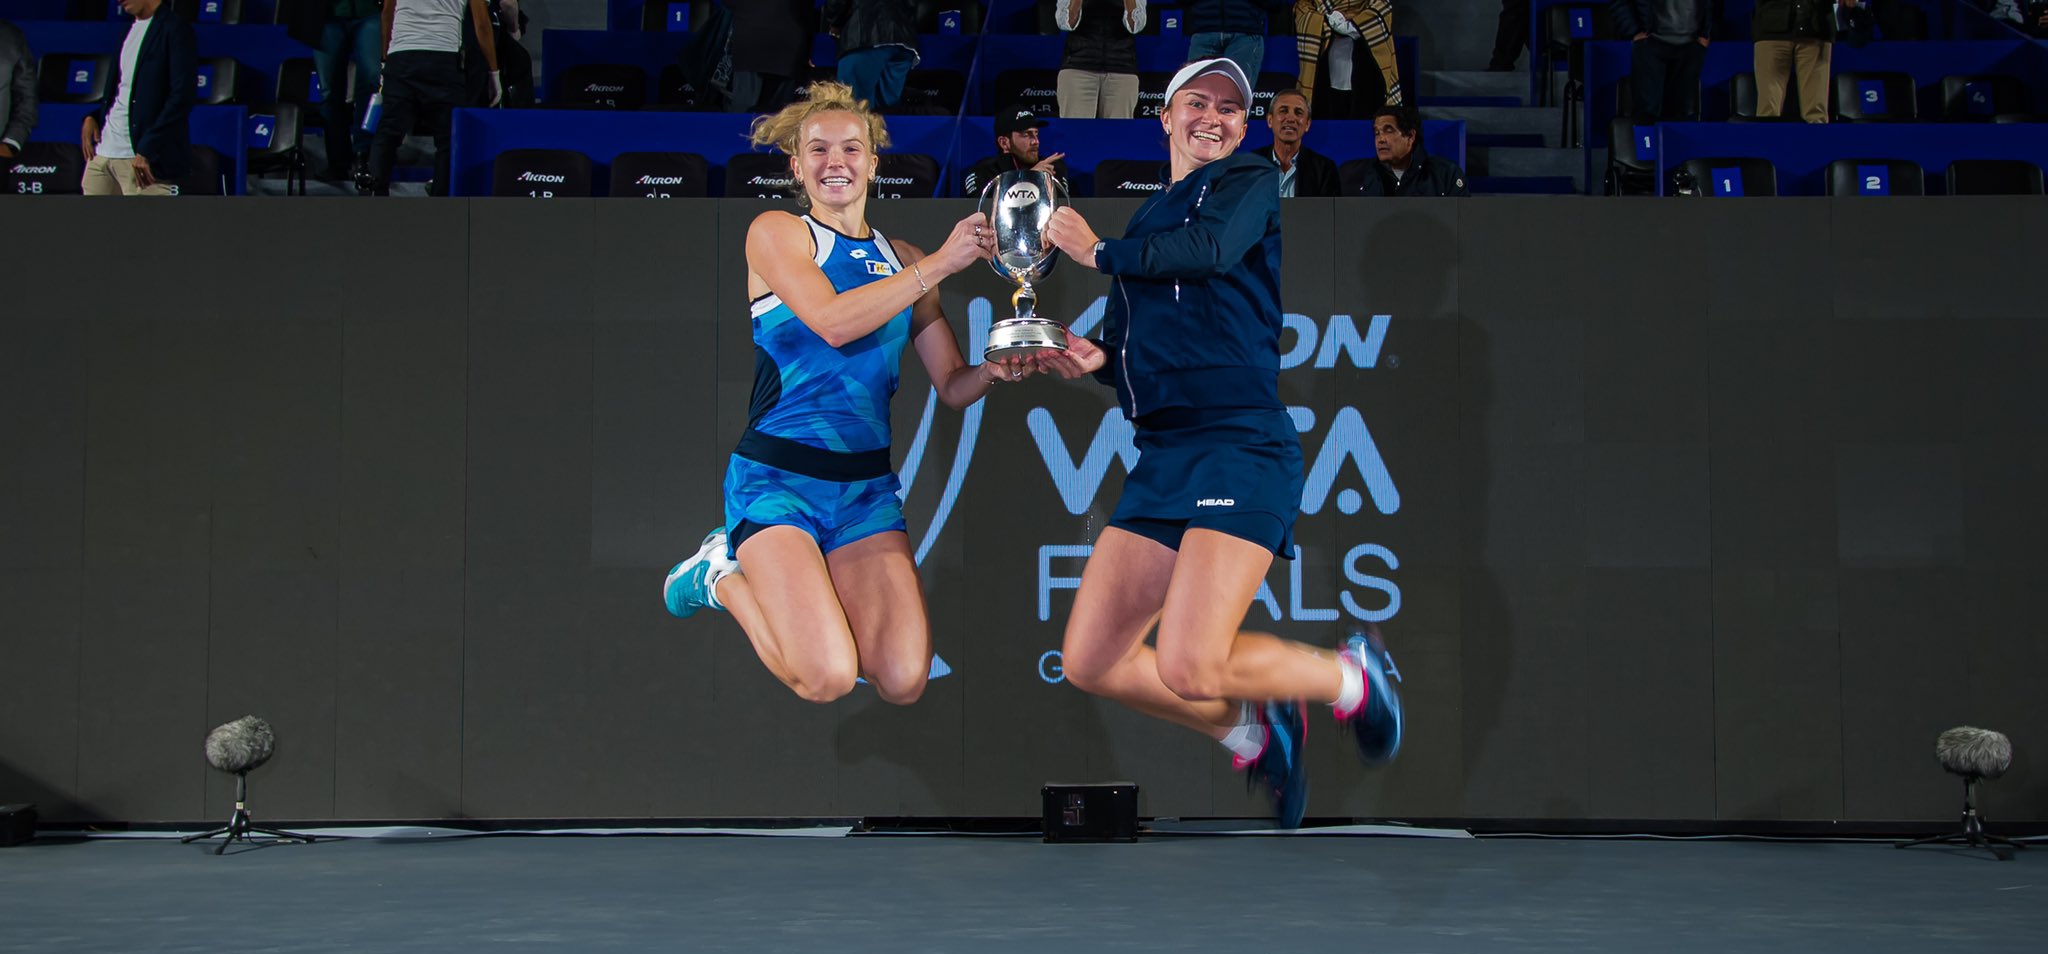 Шампионски завършек: Крейчикова и Синякова вдигнаха титлата от Финалите на WTA